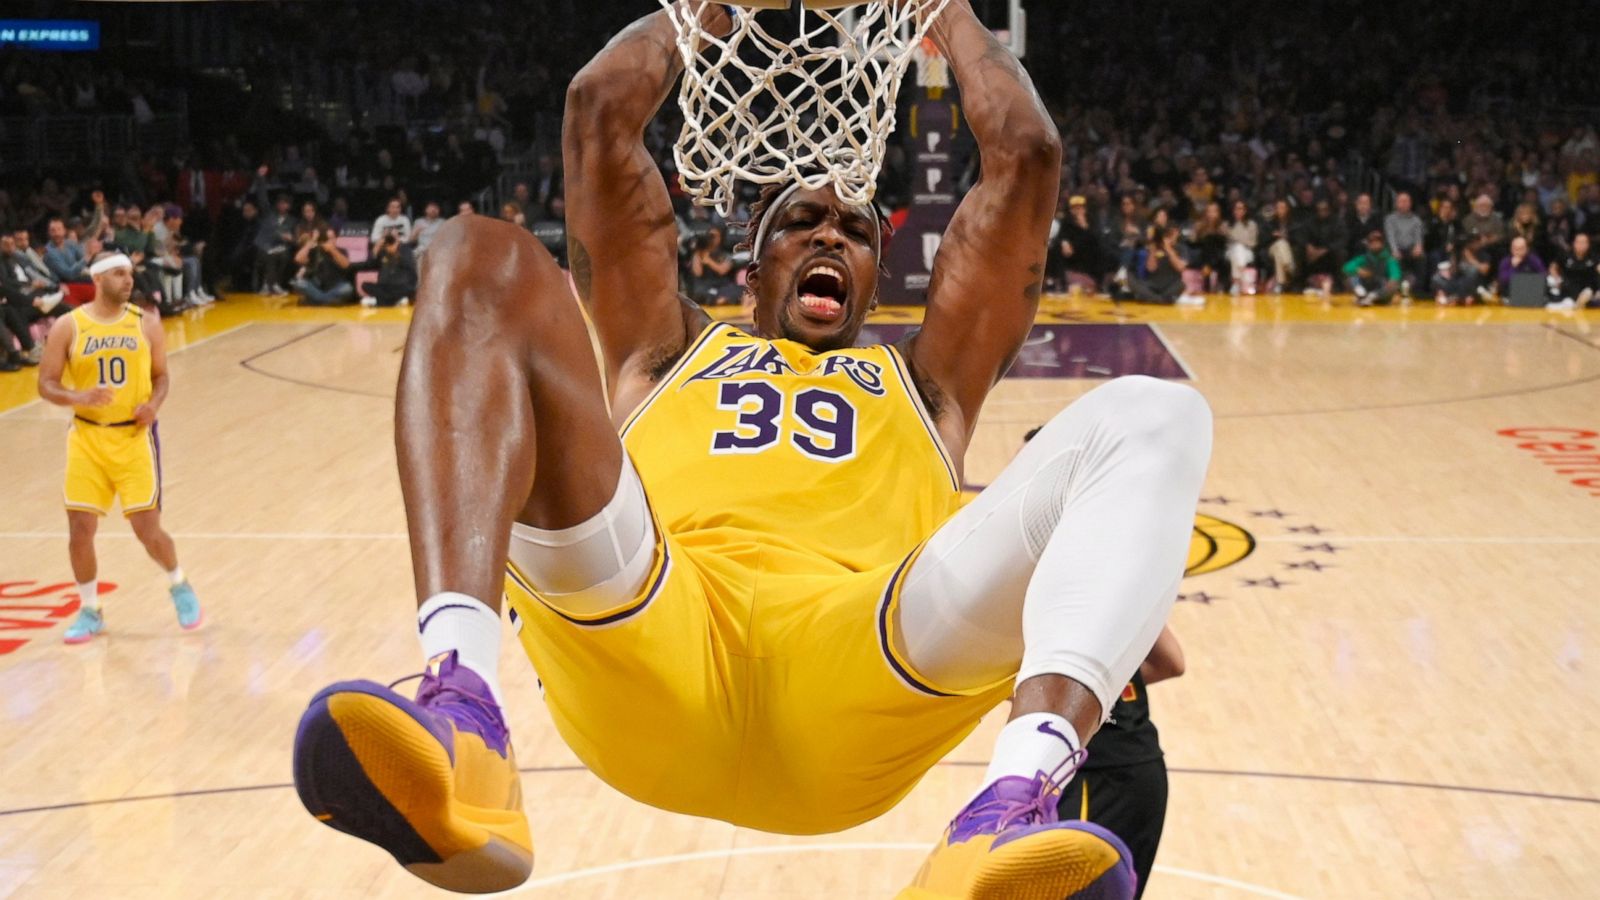 LeBron's 31 put Lakers past Cavs 128-99 